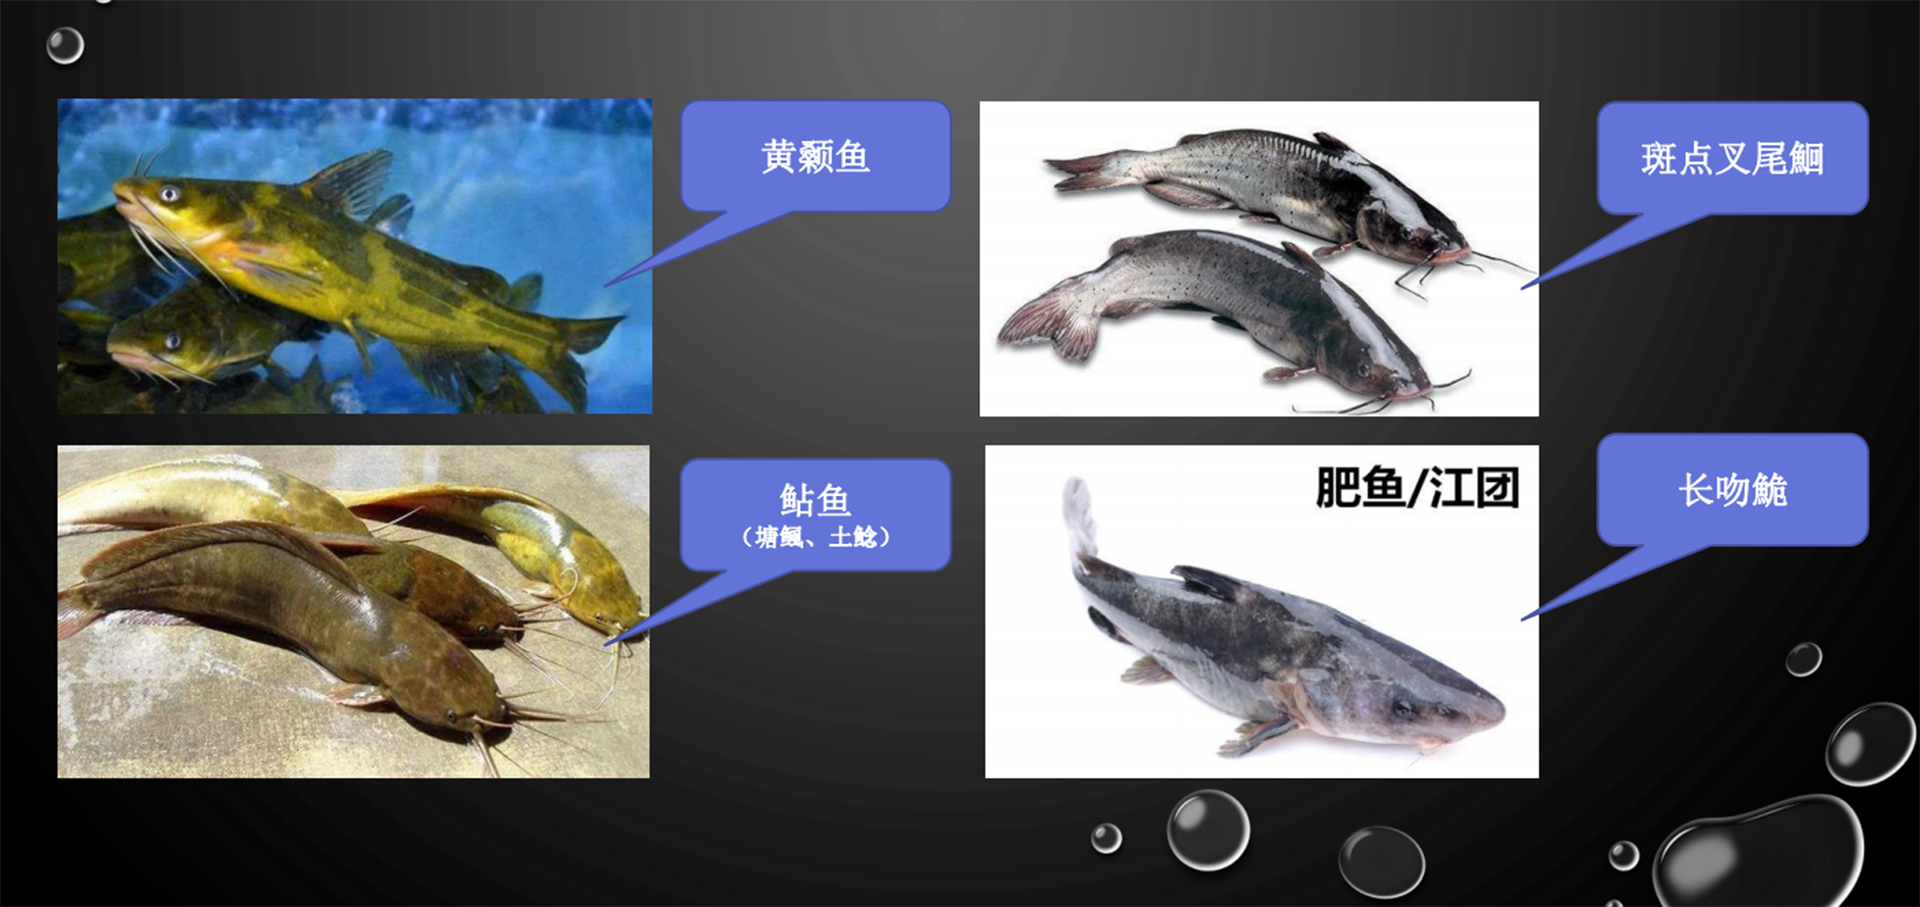 中国淡水养殖鮰鱼集合湖北人爱吃的黄颡鱼也在里面